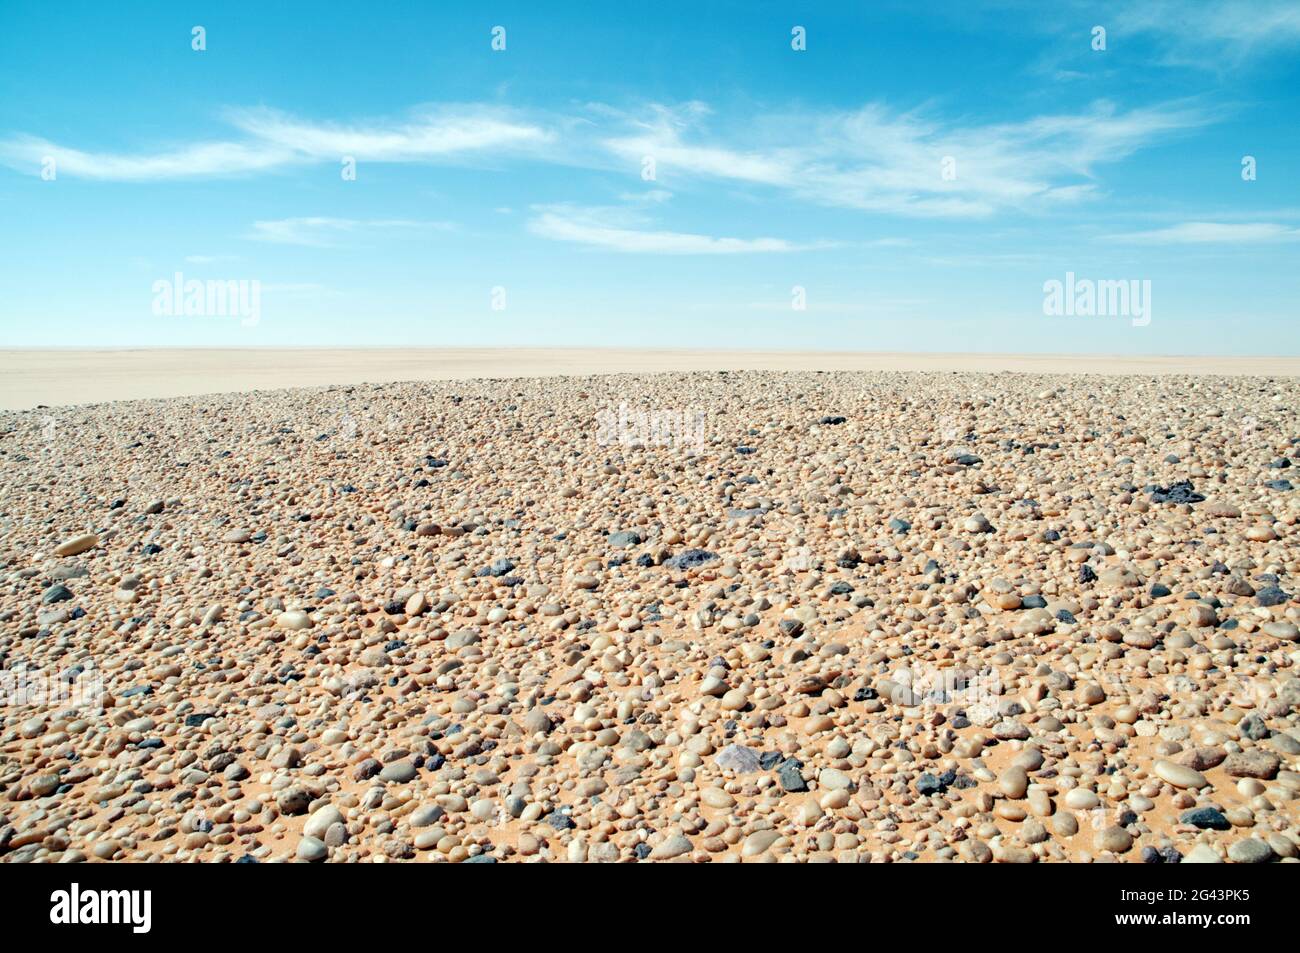 Il pavimento del deserto disseminato di innumerevoli ciottoli, parte di un antico fondo marino secco, nella regione del deserto occidentale del Sahara, nel sud-ovest dell'Egitto. Foto Stock